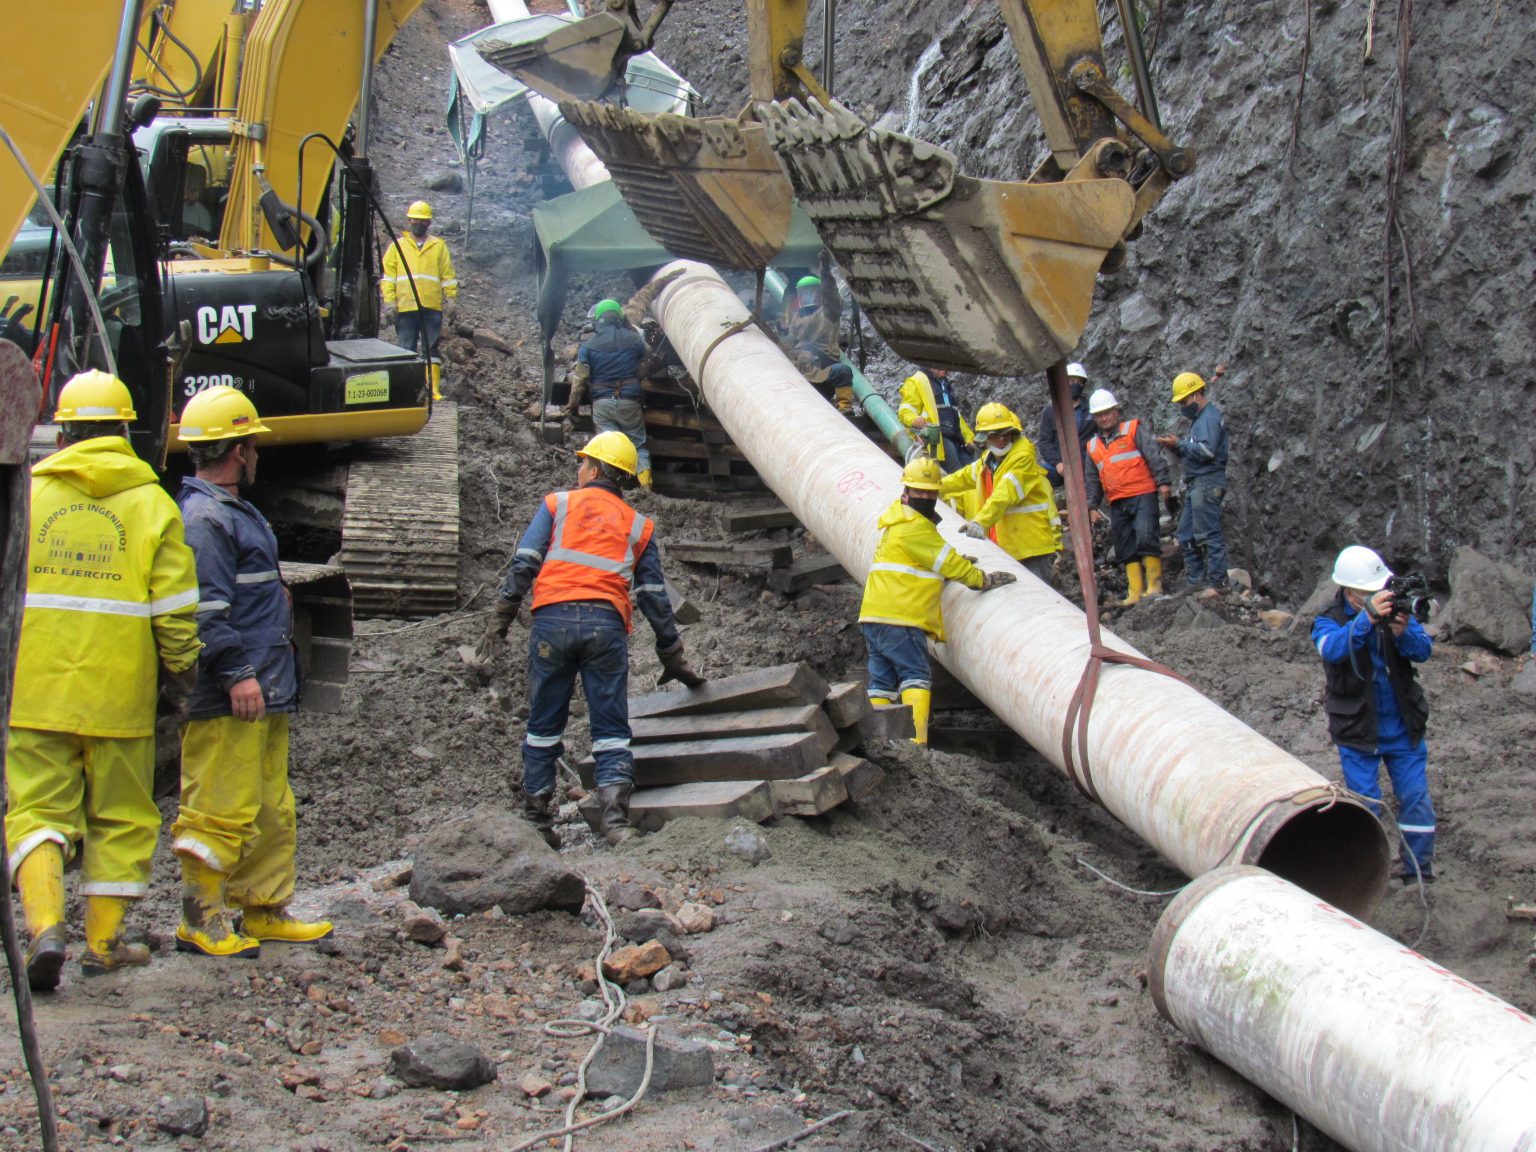 EP Petroecuador avanza con i lavori di costruzione delle varianti dell’oleodotto SOTE - Pipeline News -  - News